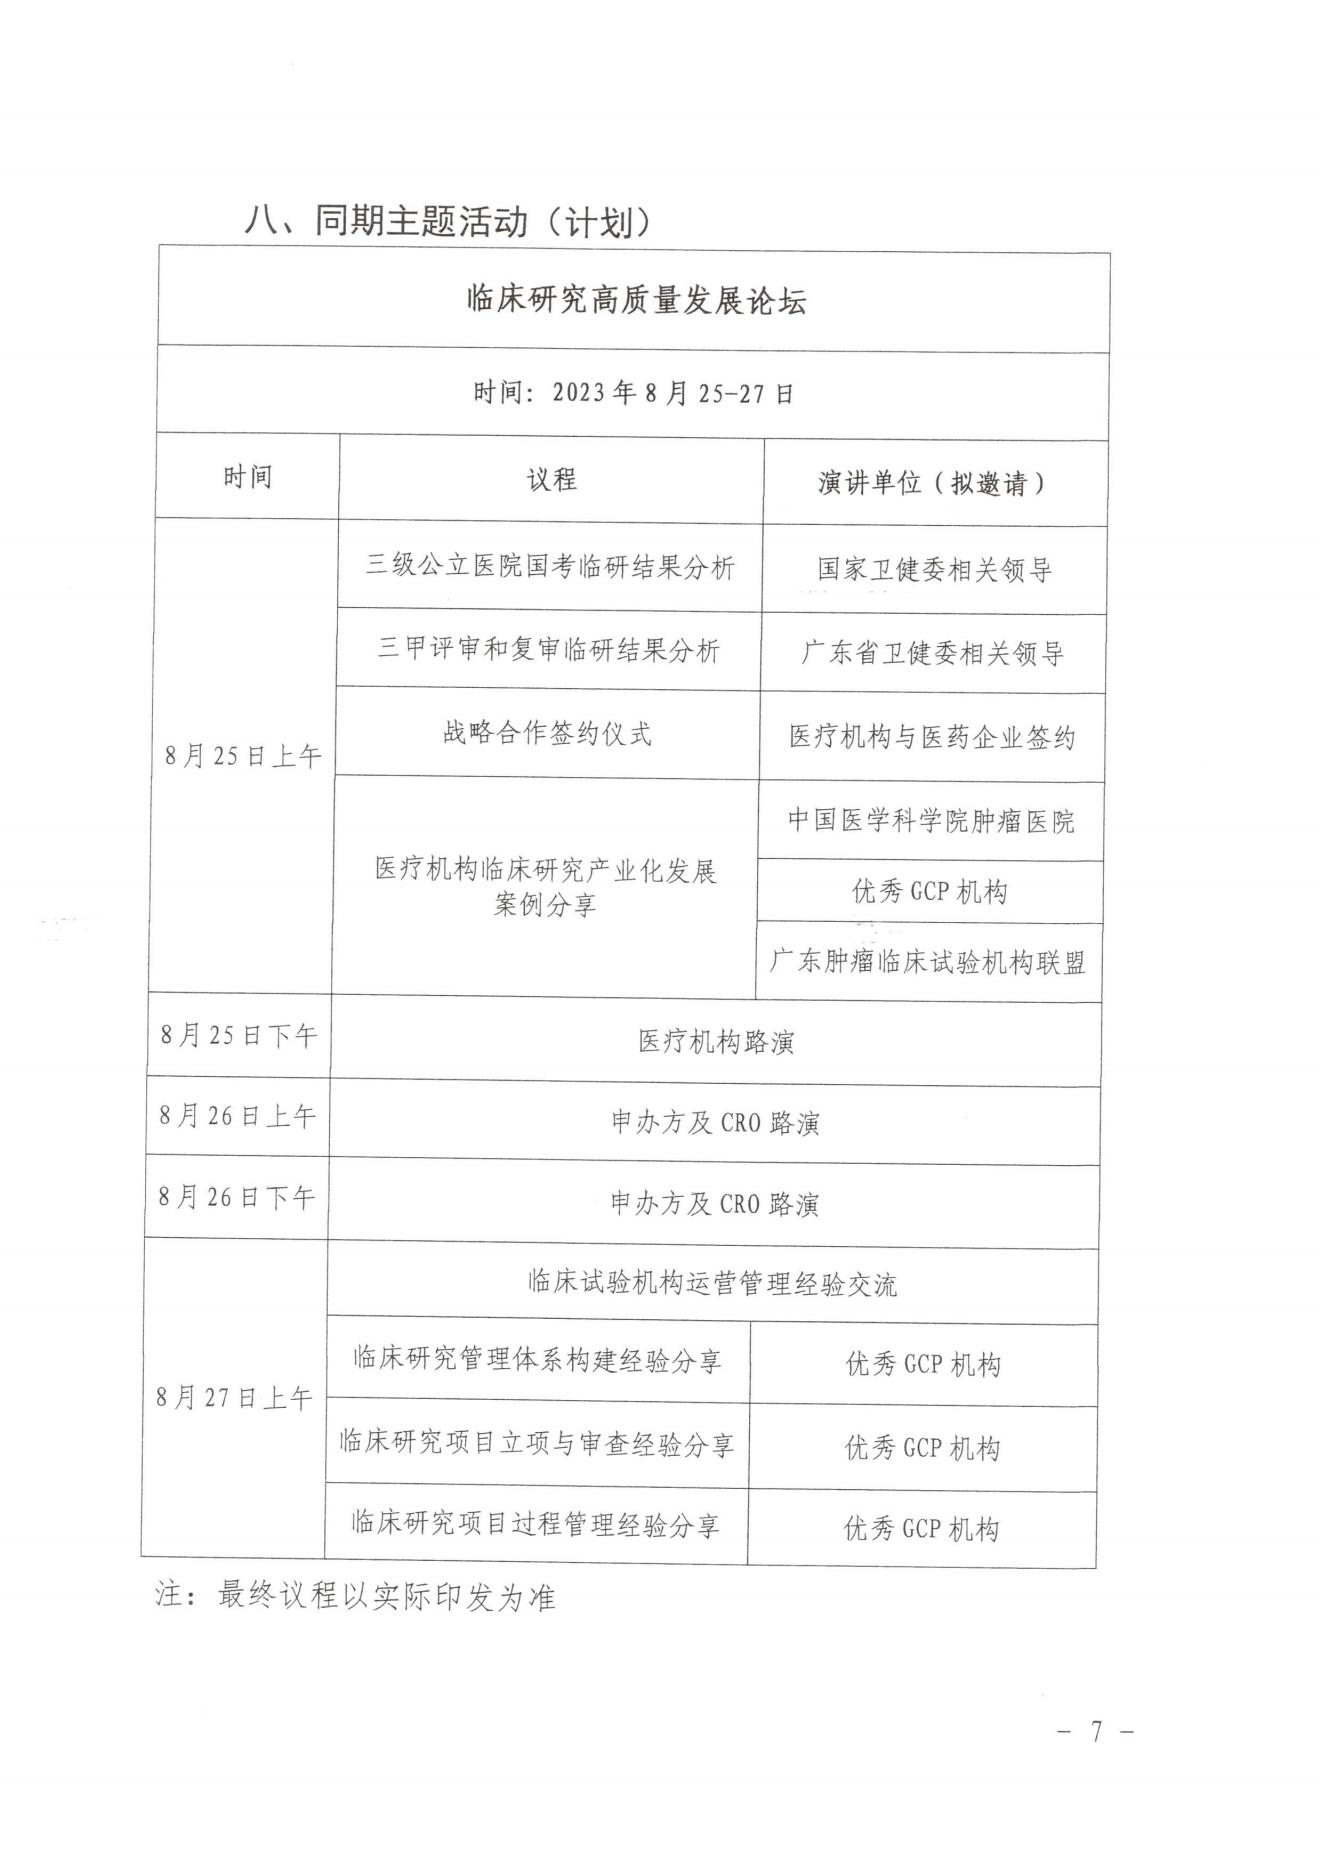 广州市卫健委关于邀请参加2023广州临研会的函-完整版(1)_06.jpg